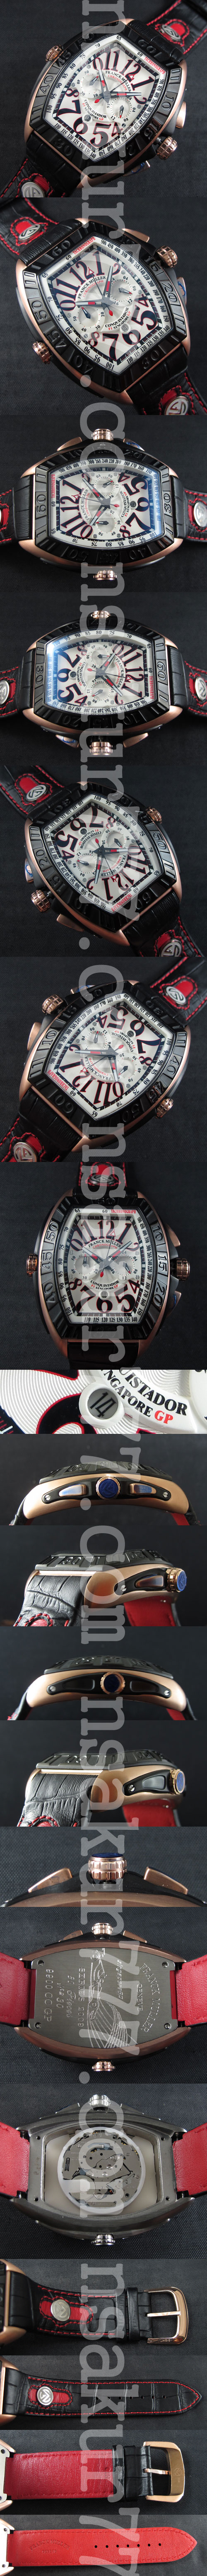 メンズ腕時計フランクミュラー コンキスタドール グランプリ(ブラック革ベルト)